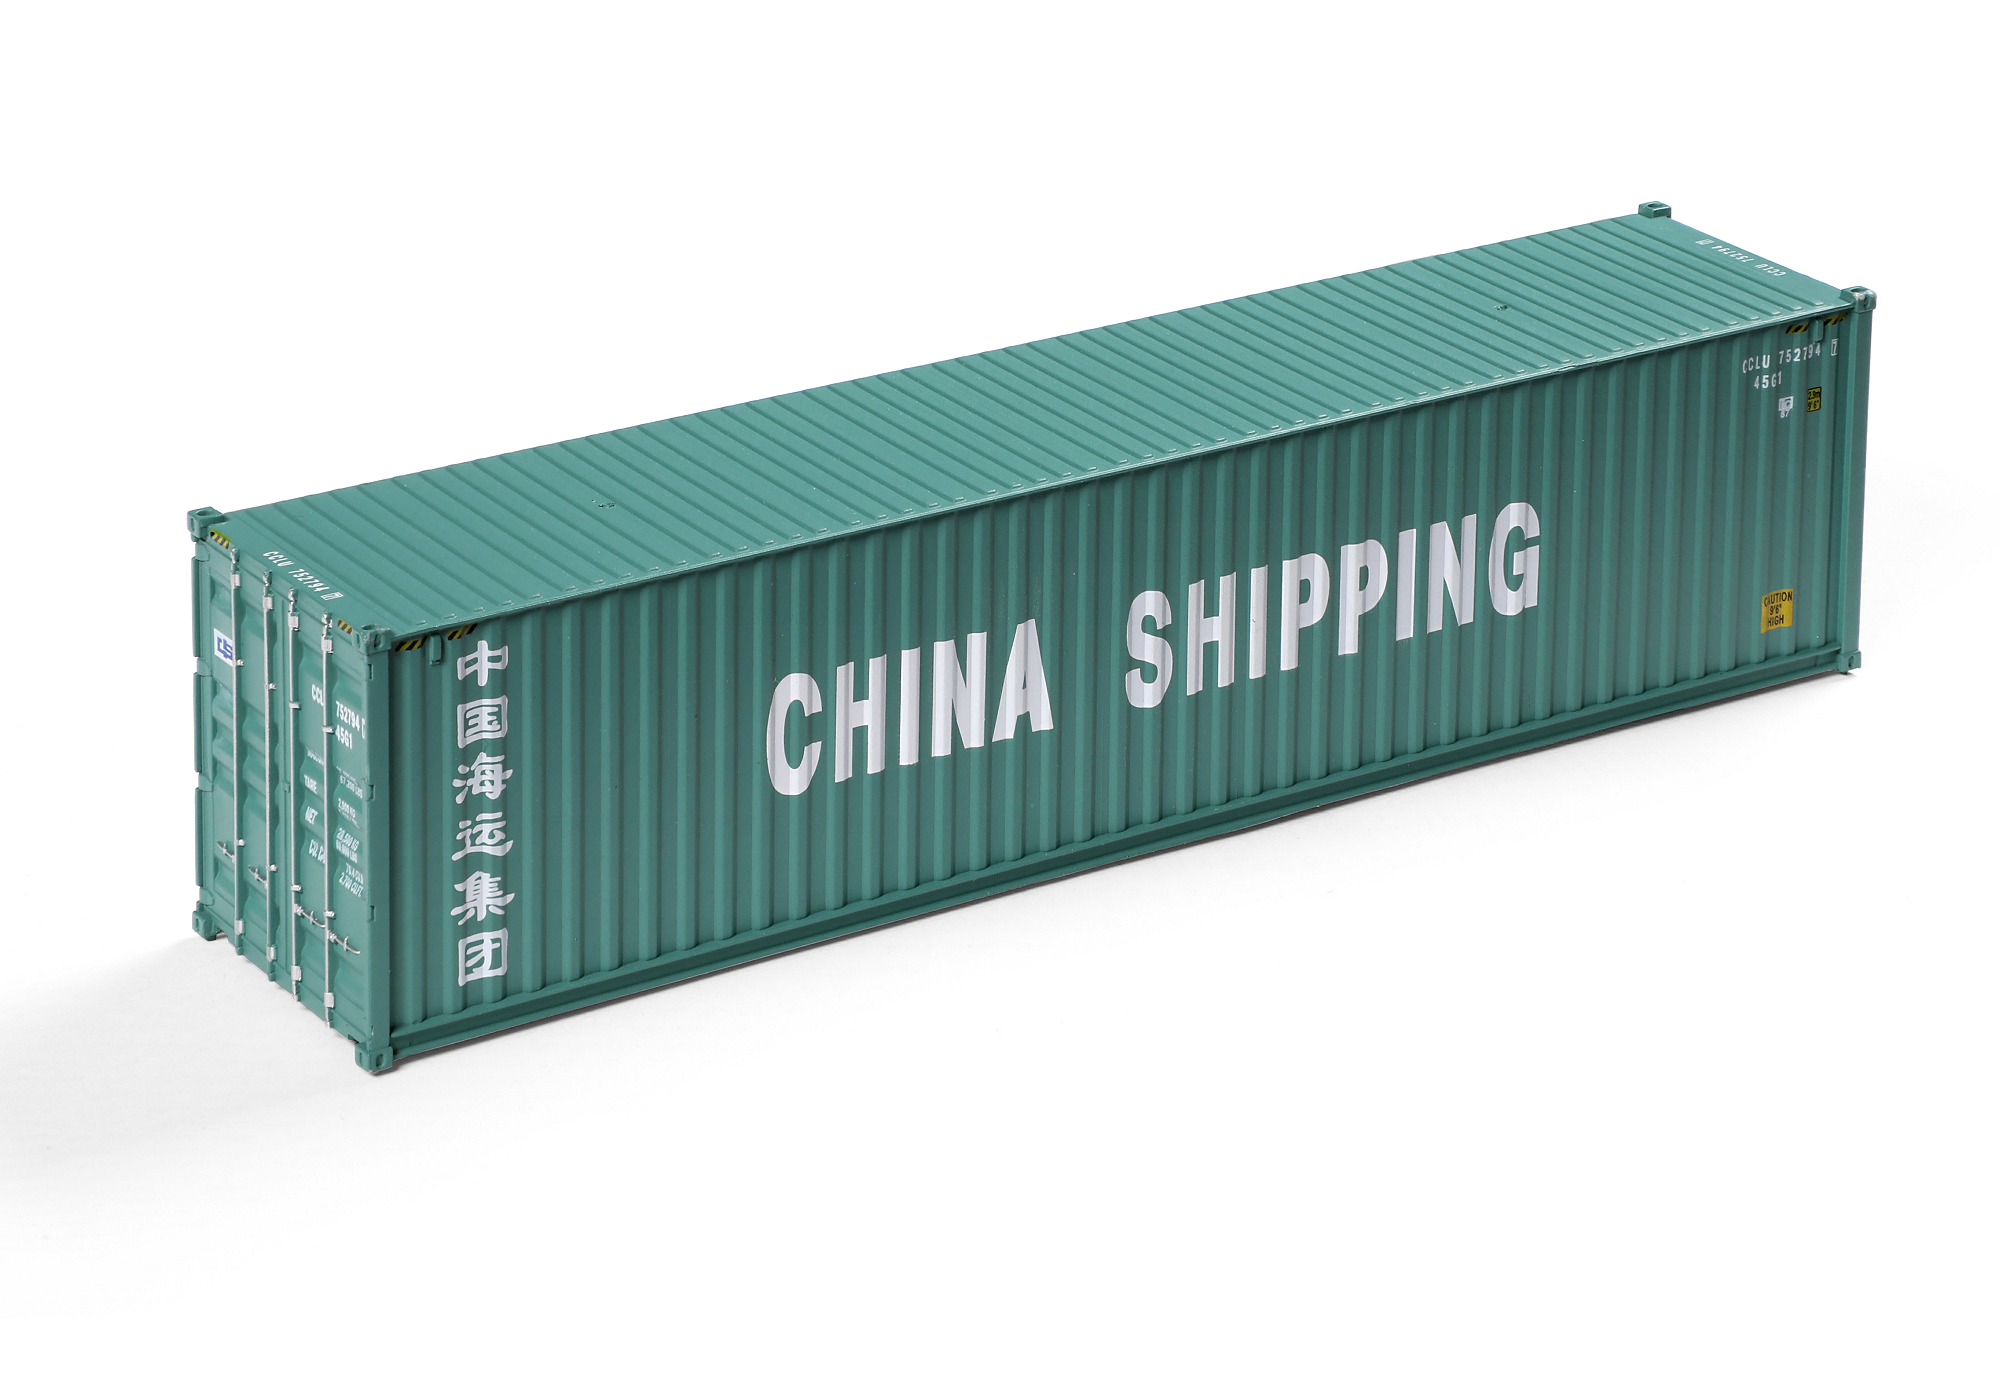 Accesorios para el diseño de ferrocarril Modelo Faller FA 180844 – 40 Container China Shipping 